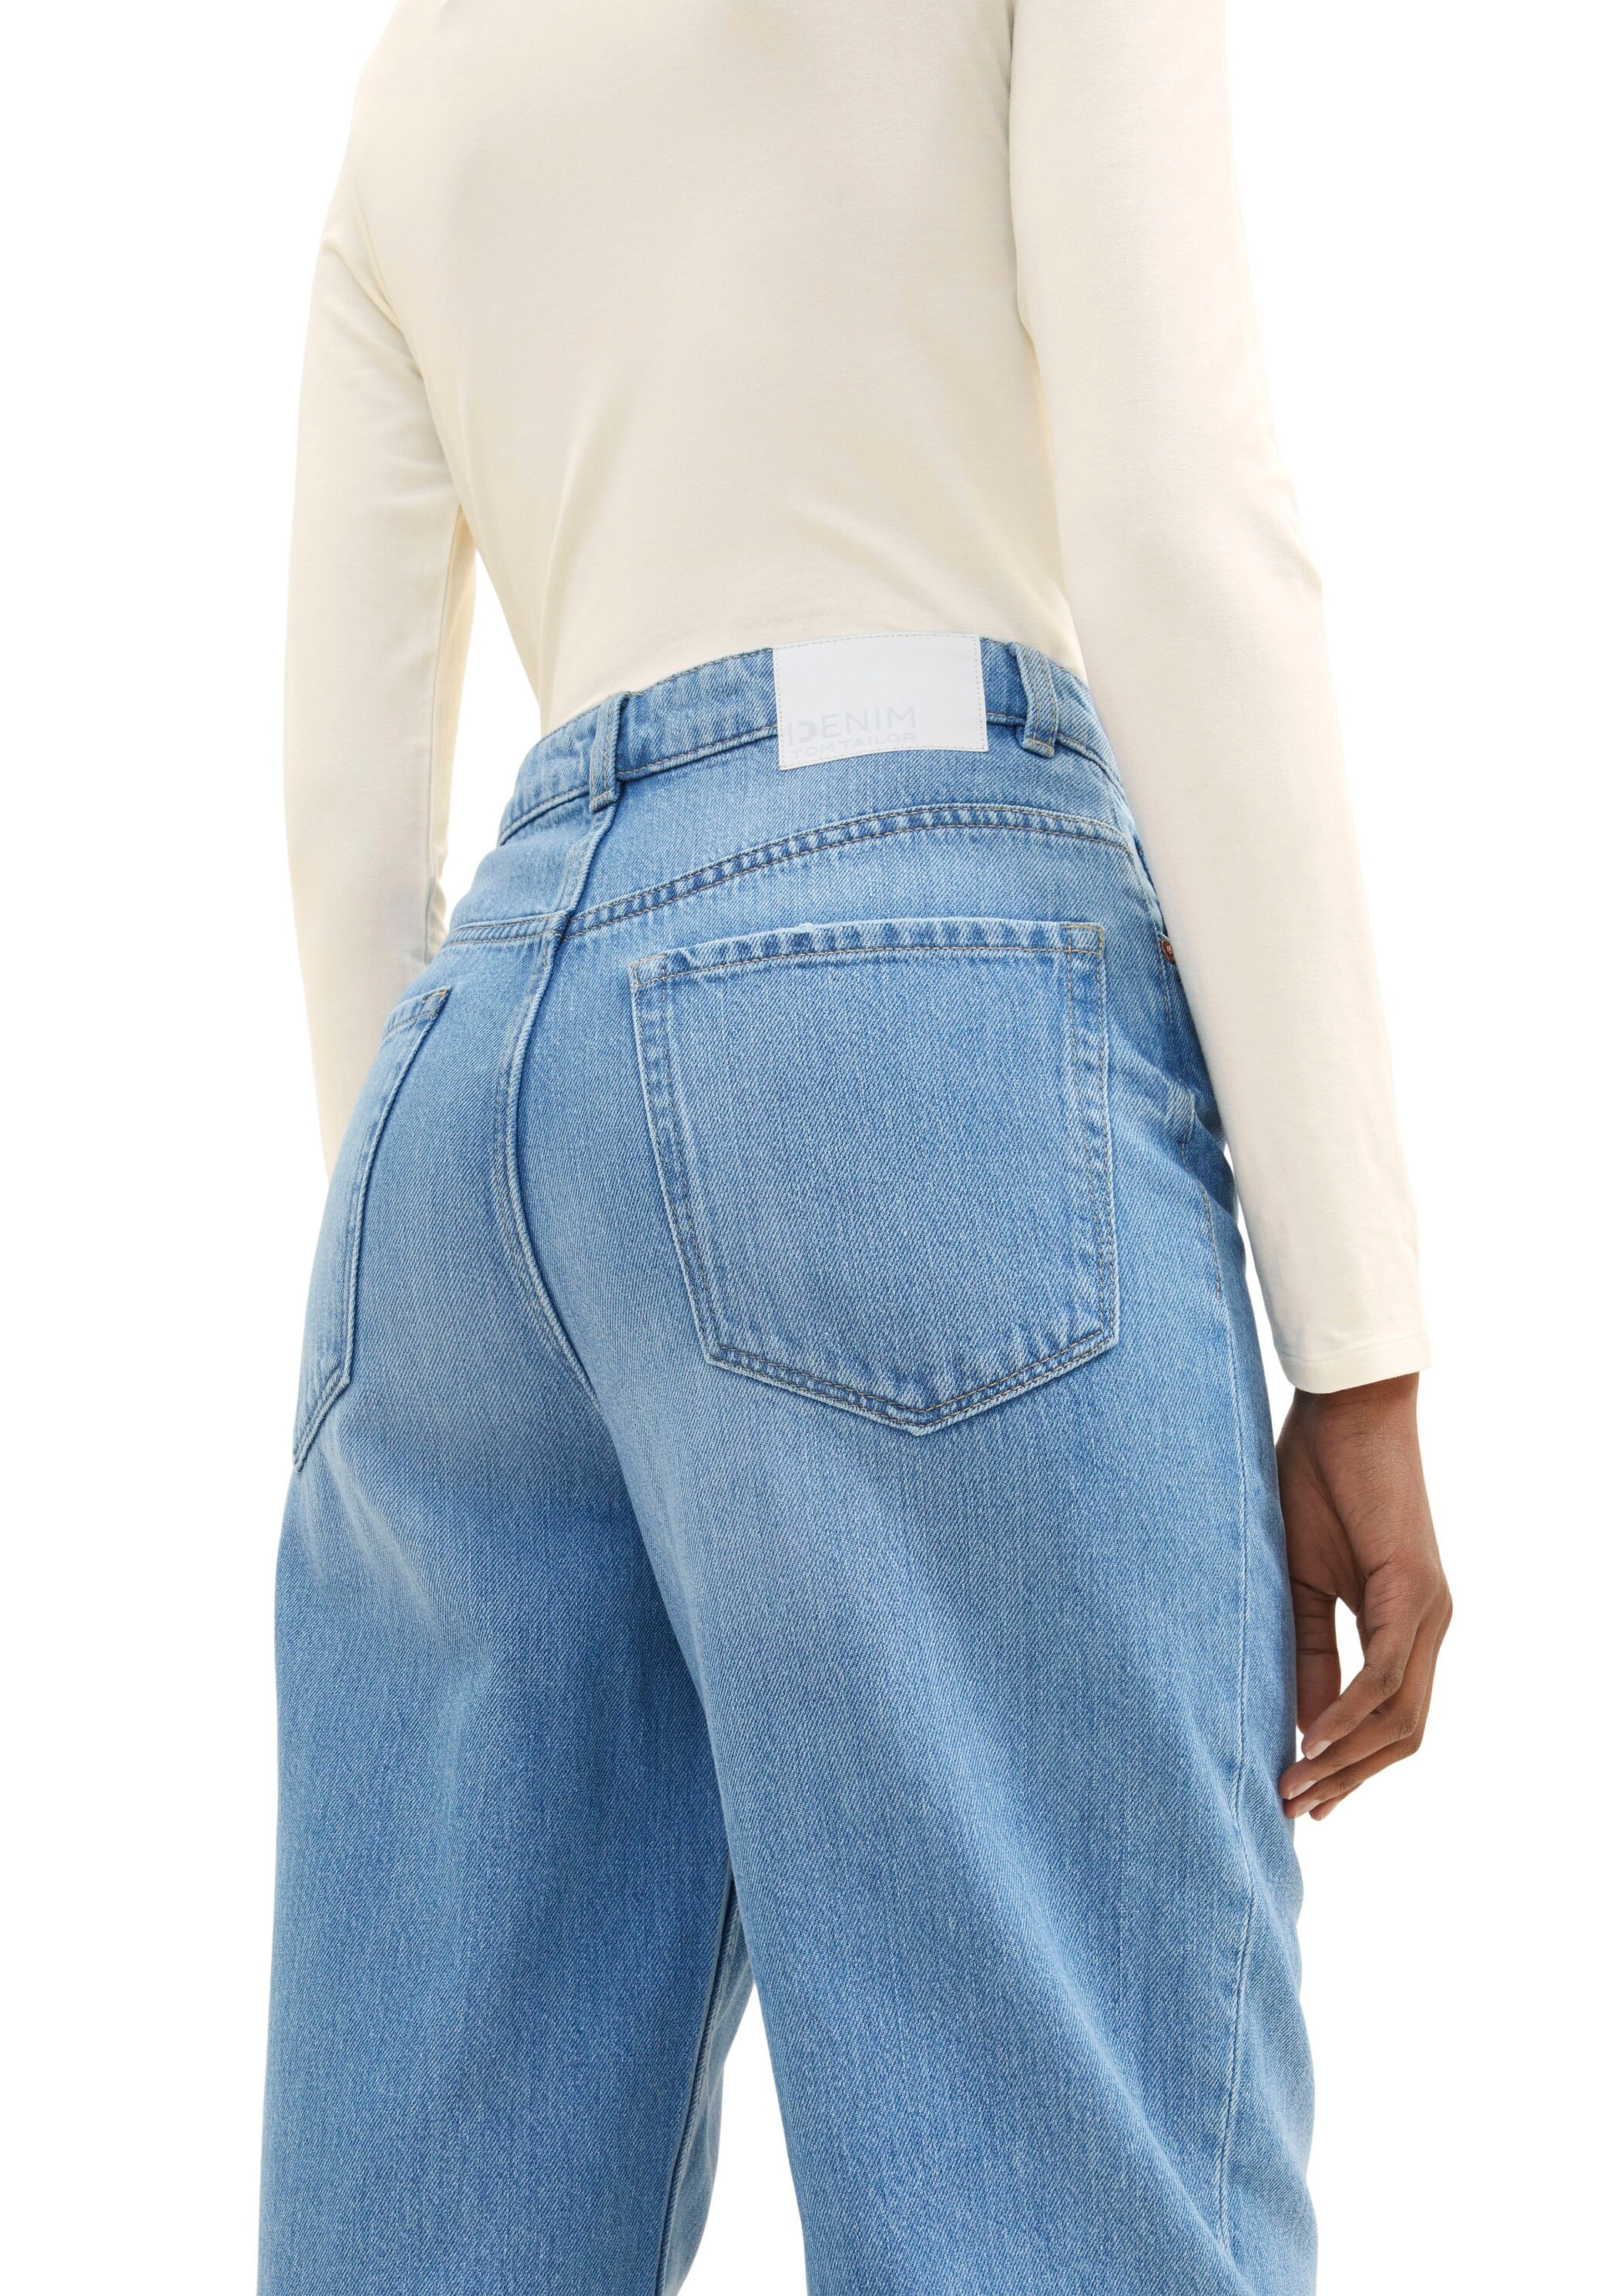 TOM TAILOR Denim 5-Pocket-Jeans bestellen OTTO bei